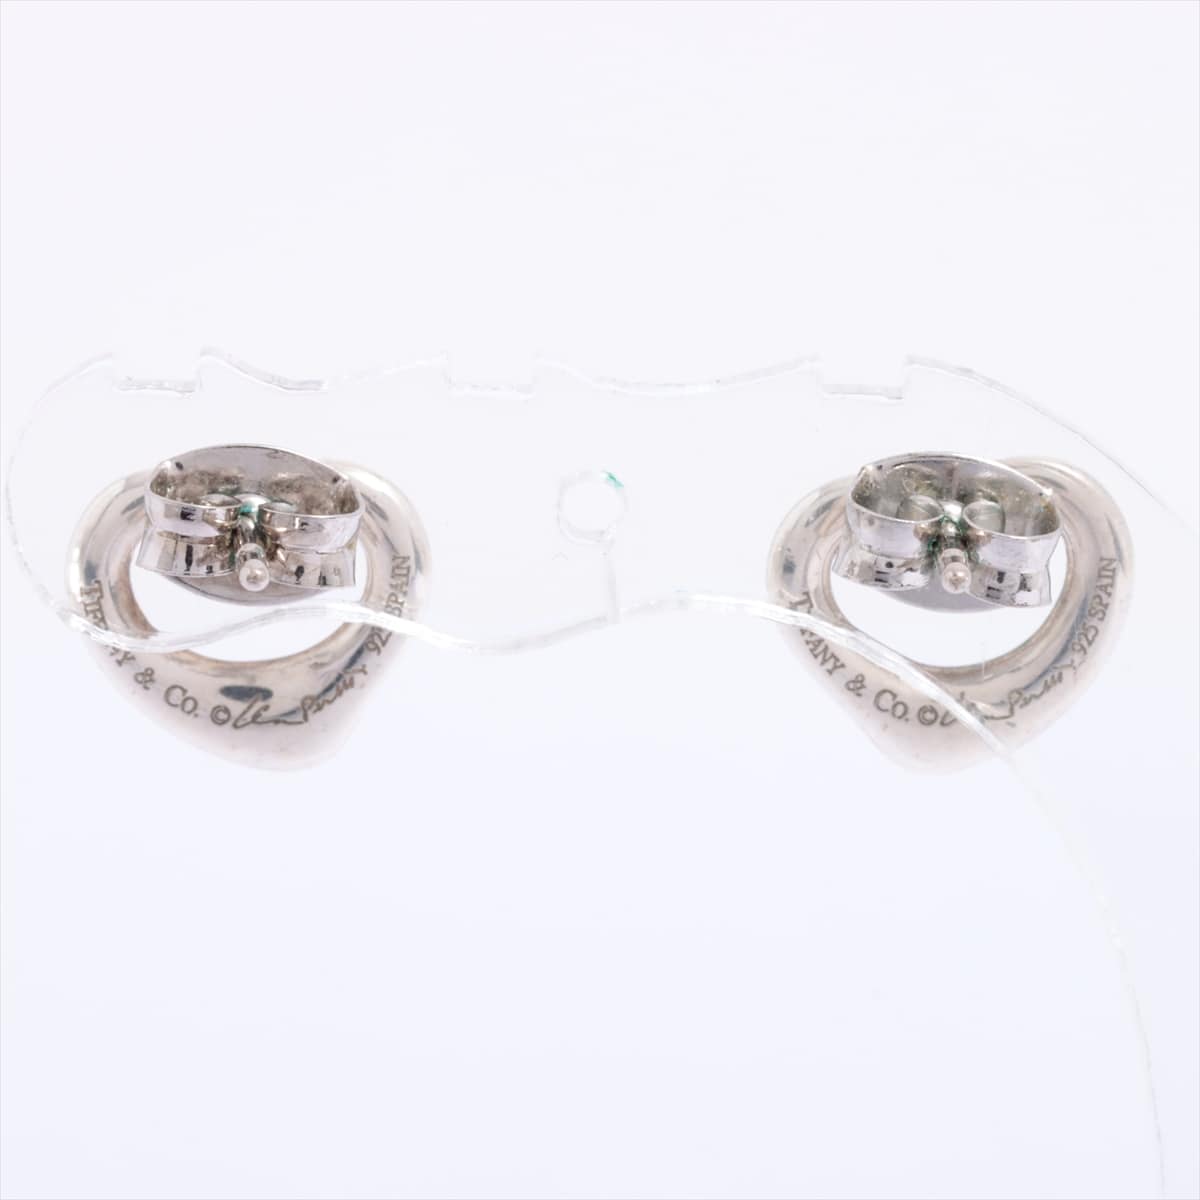 Tiffany Open Heart Piercing jewelry 925 1.9g Silver